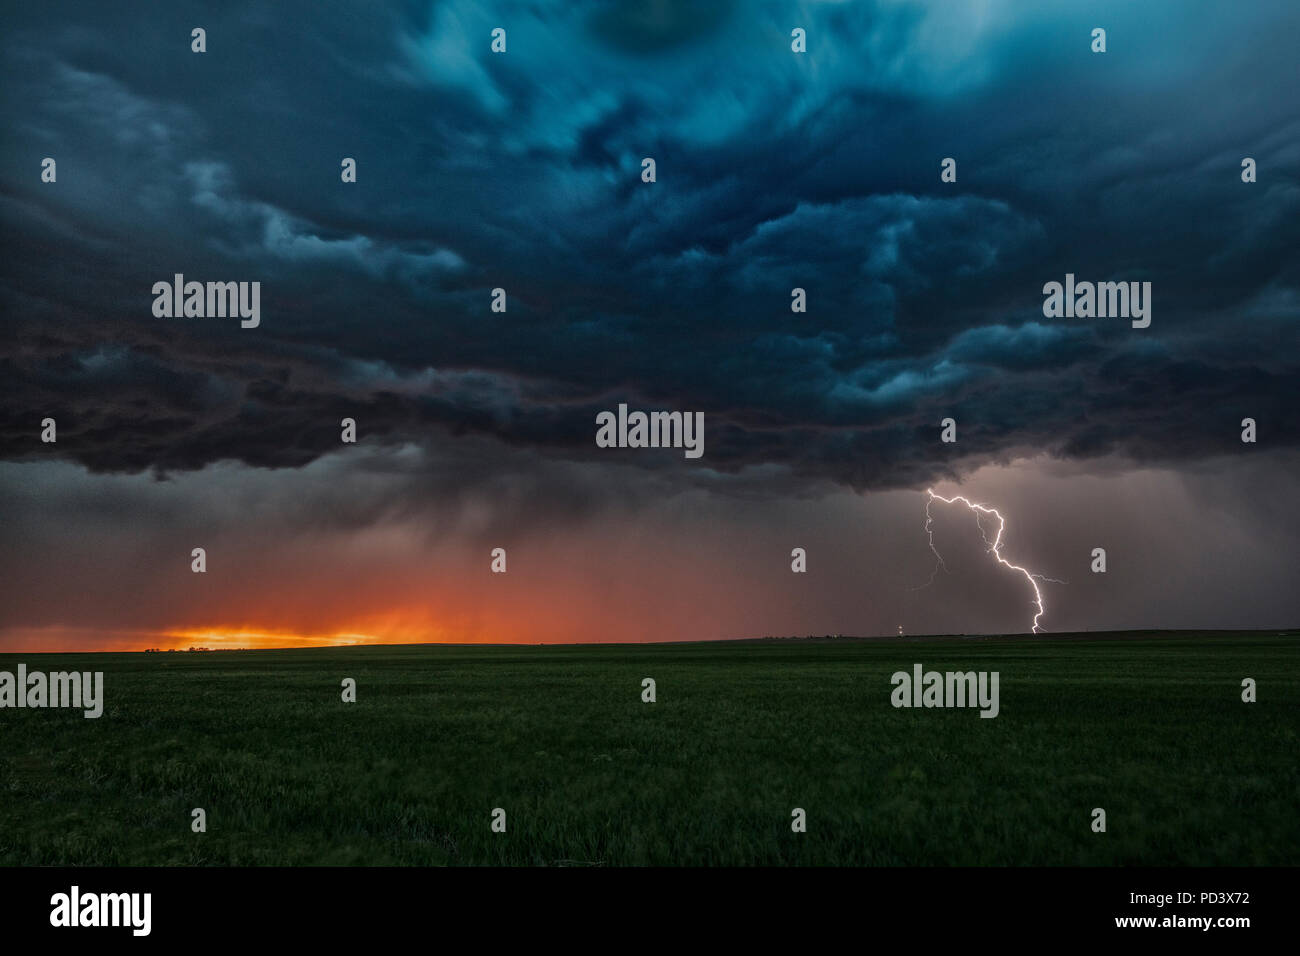 Asperatus nuages dans le coucher du soleil et des éclairs nuage-sol, vis, Nebraska, États-Unis Banque D'Images